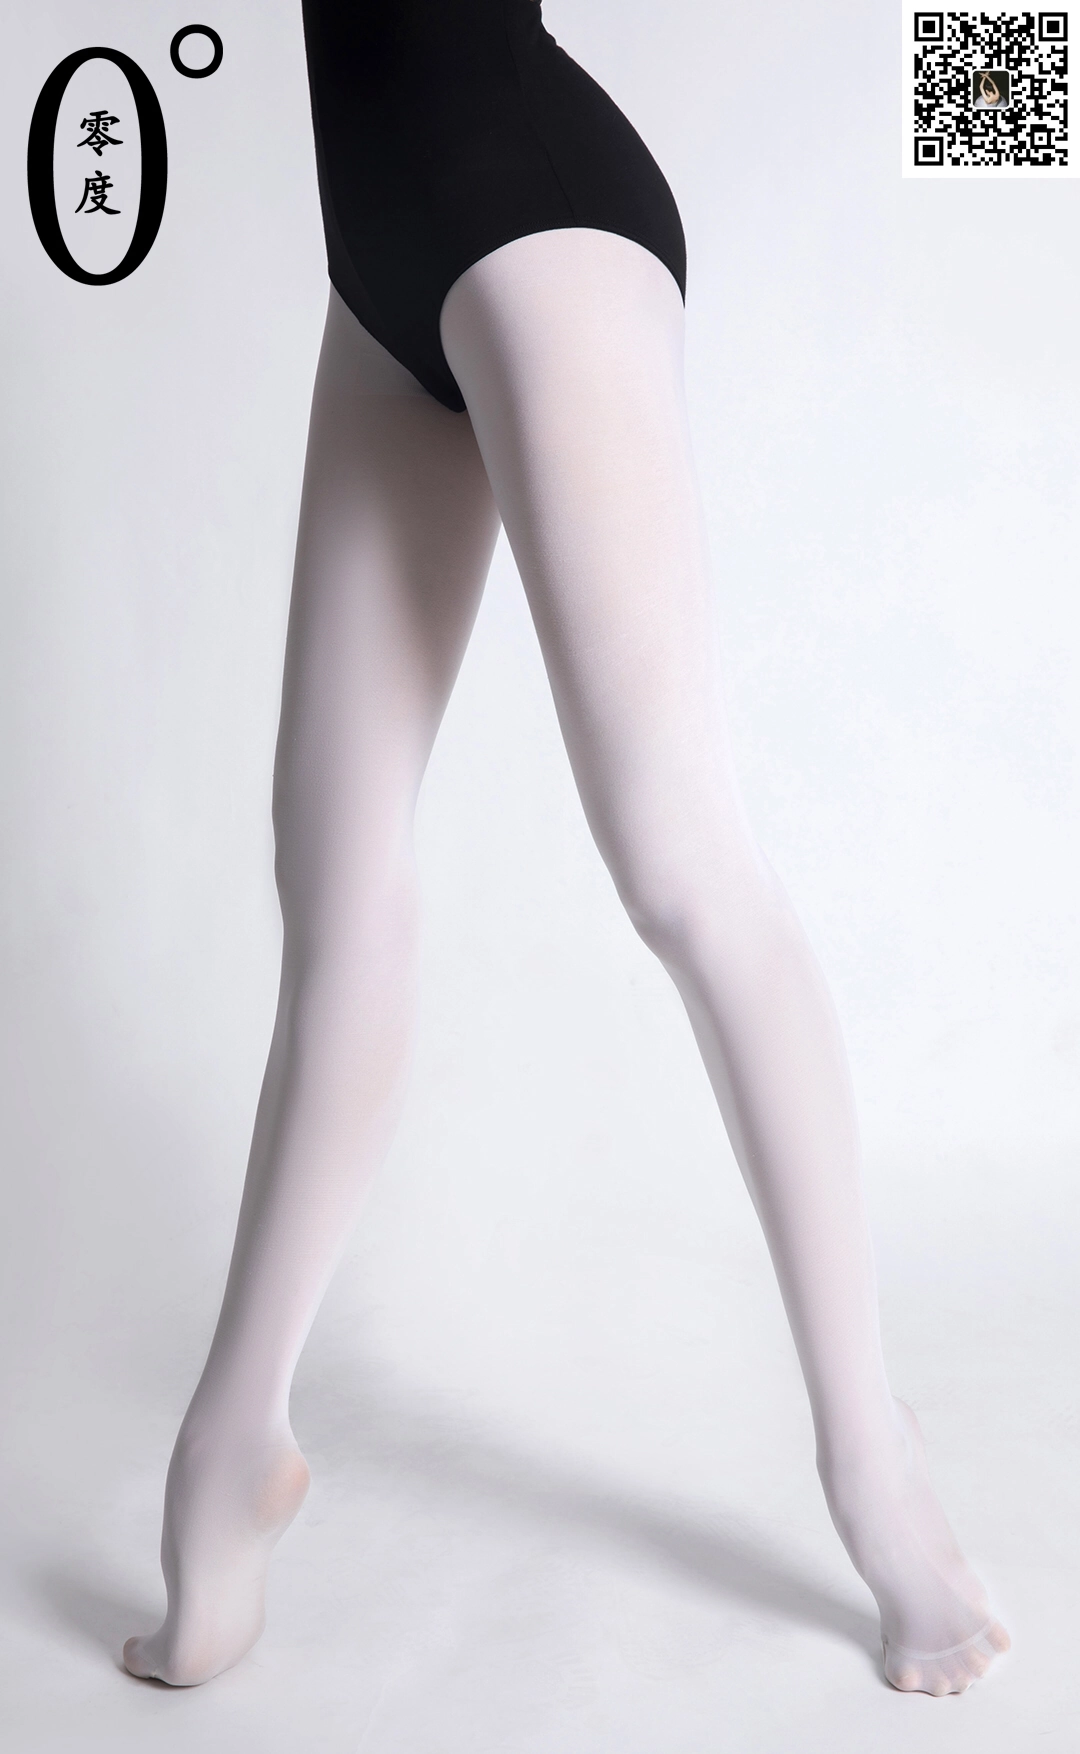 [LD零度摄影]NO.019 舞蹈老师晶晶 黑色透视镂空连体衣加白色丝袜美腿性感私房写真集,